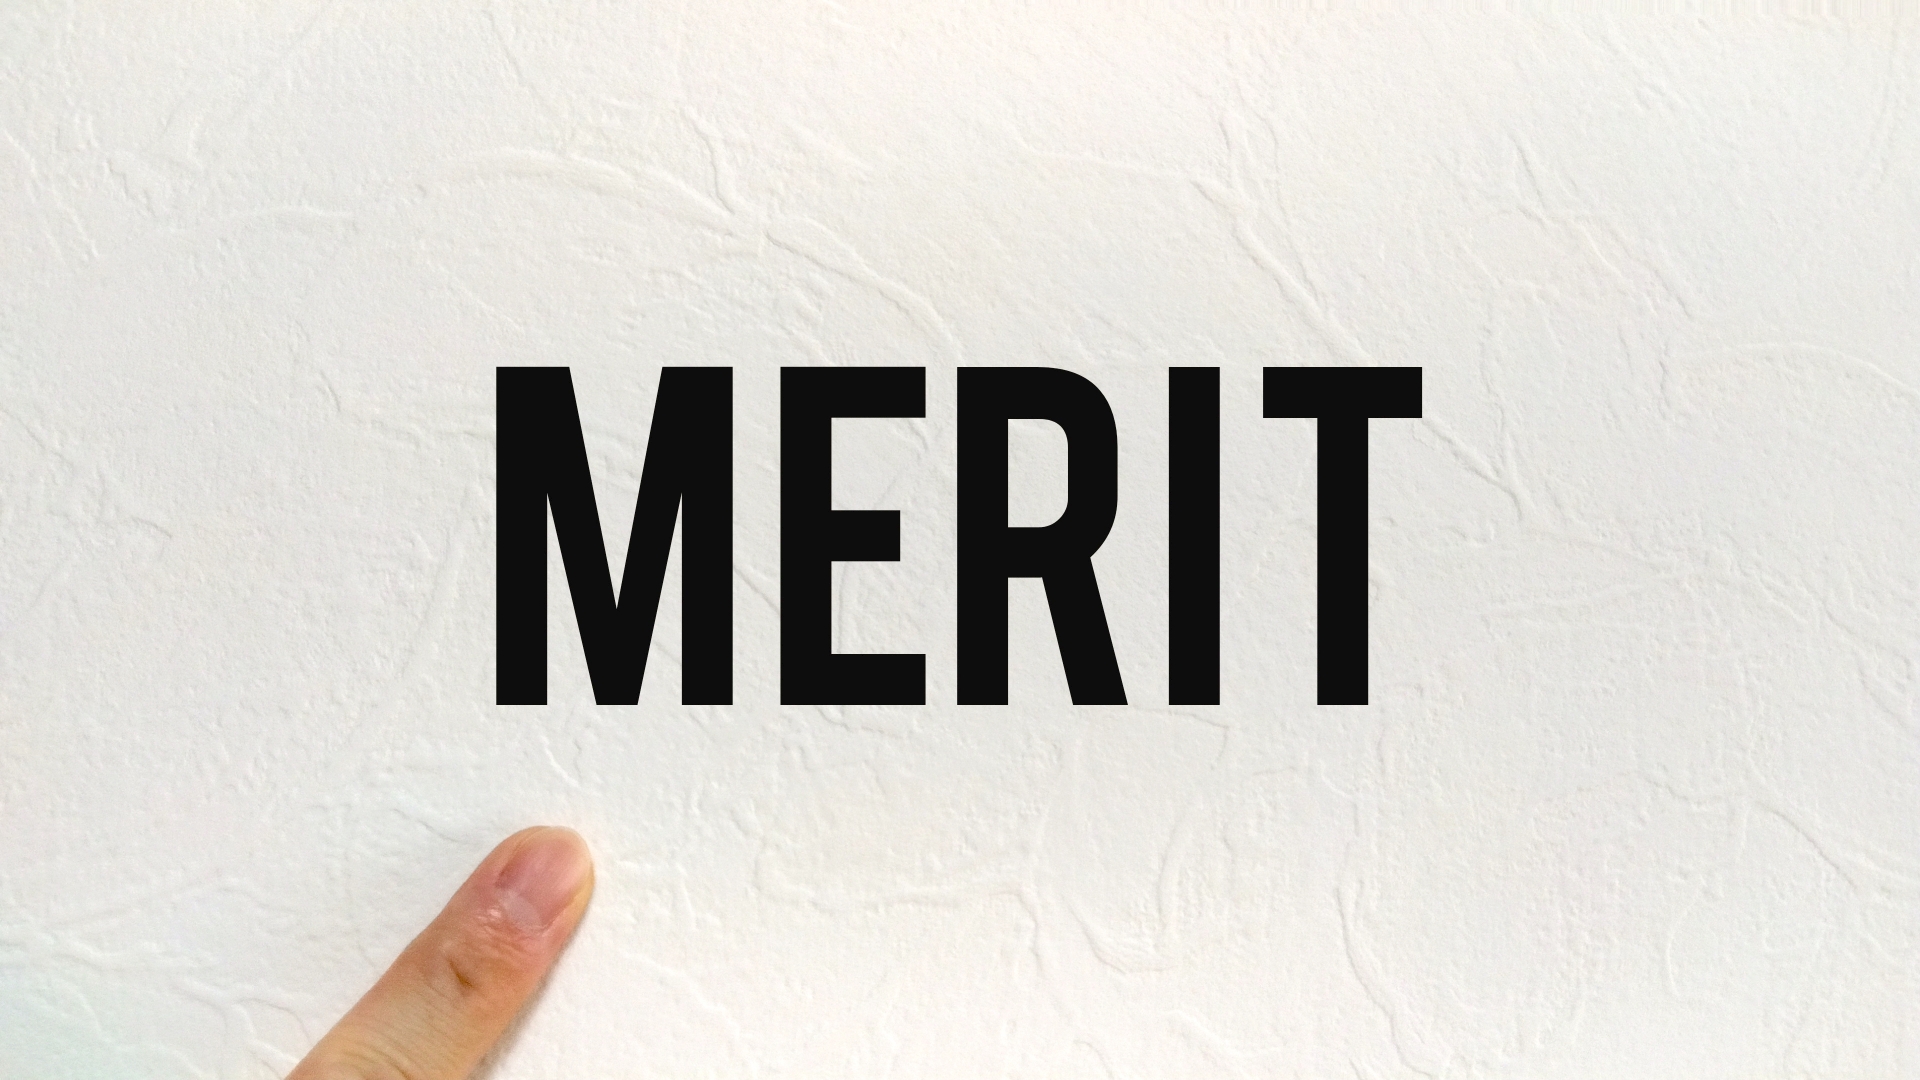 「MERIT」の文字を指し示す指